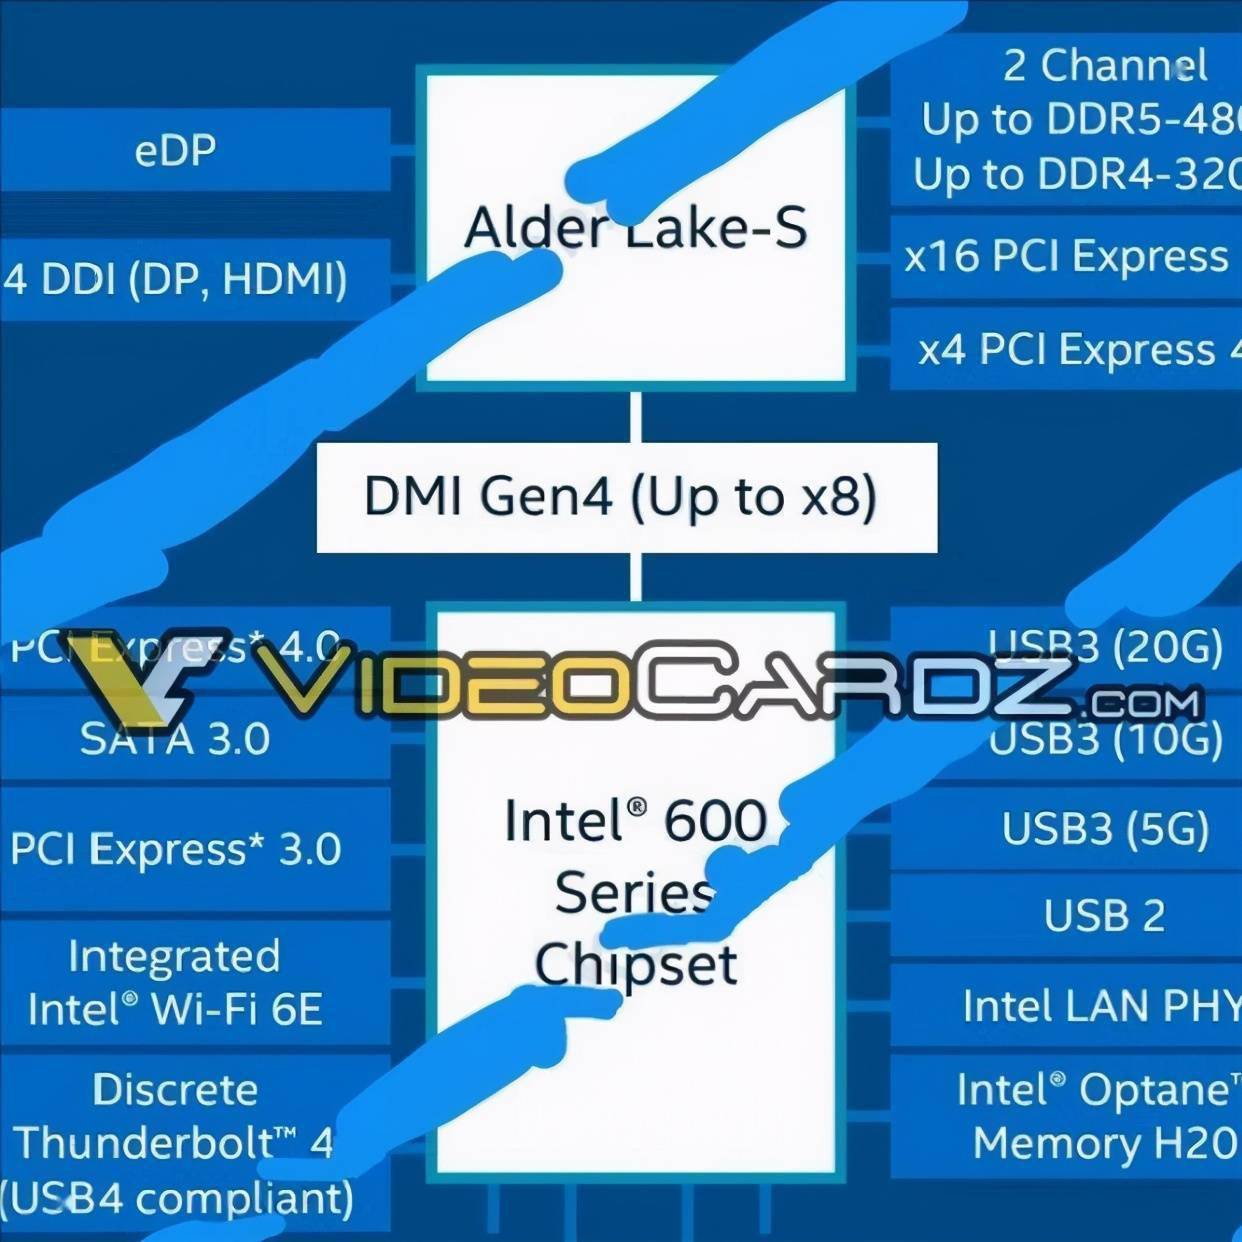 1080 显卡能否适应时代潮流，与 DDR5 内存协同作战？  第2张